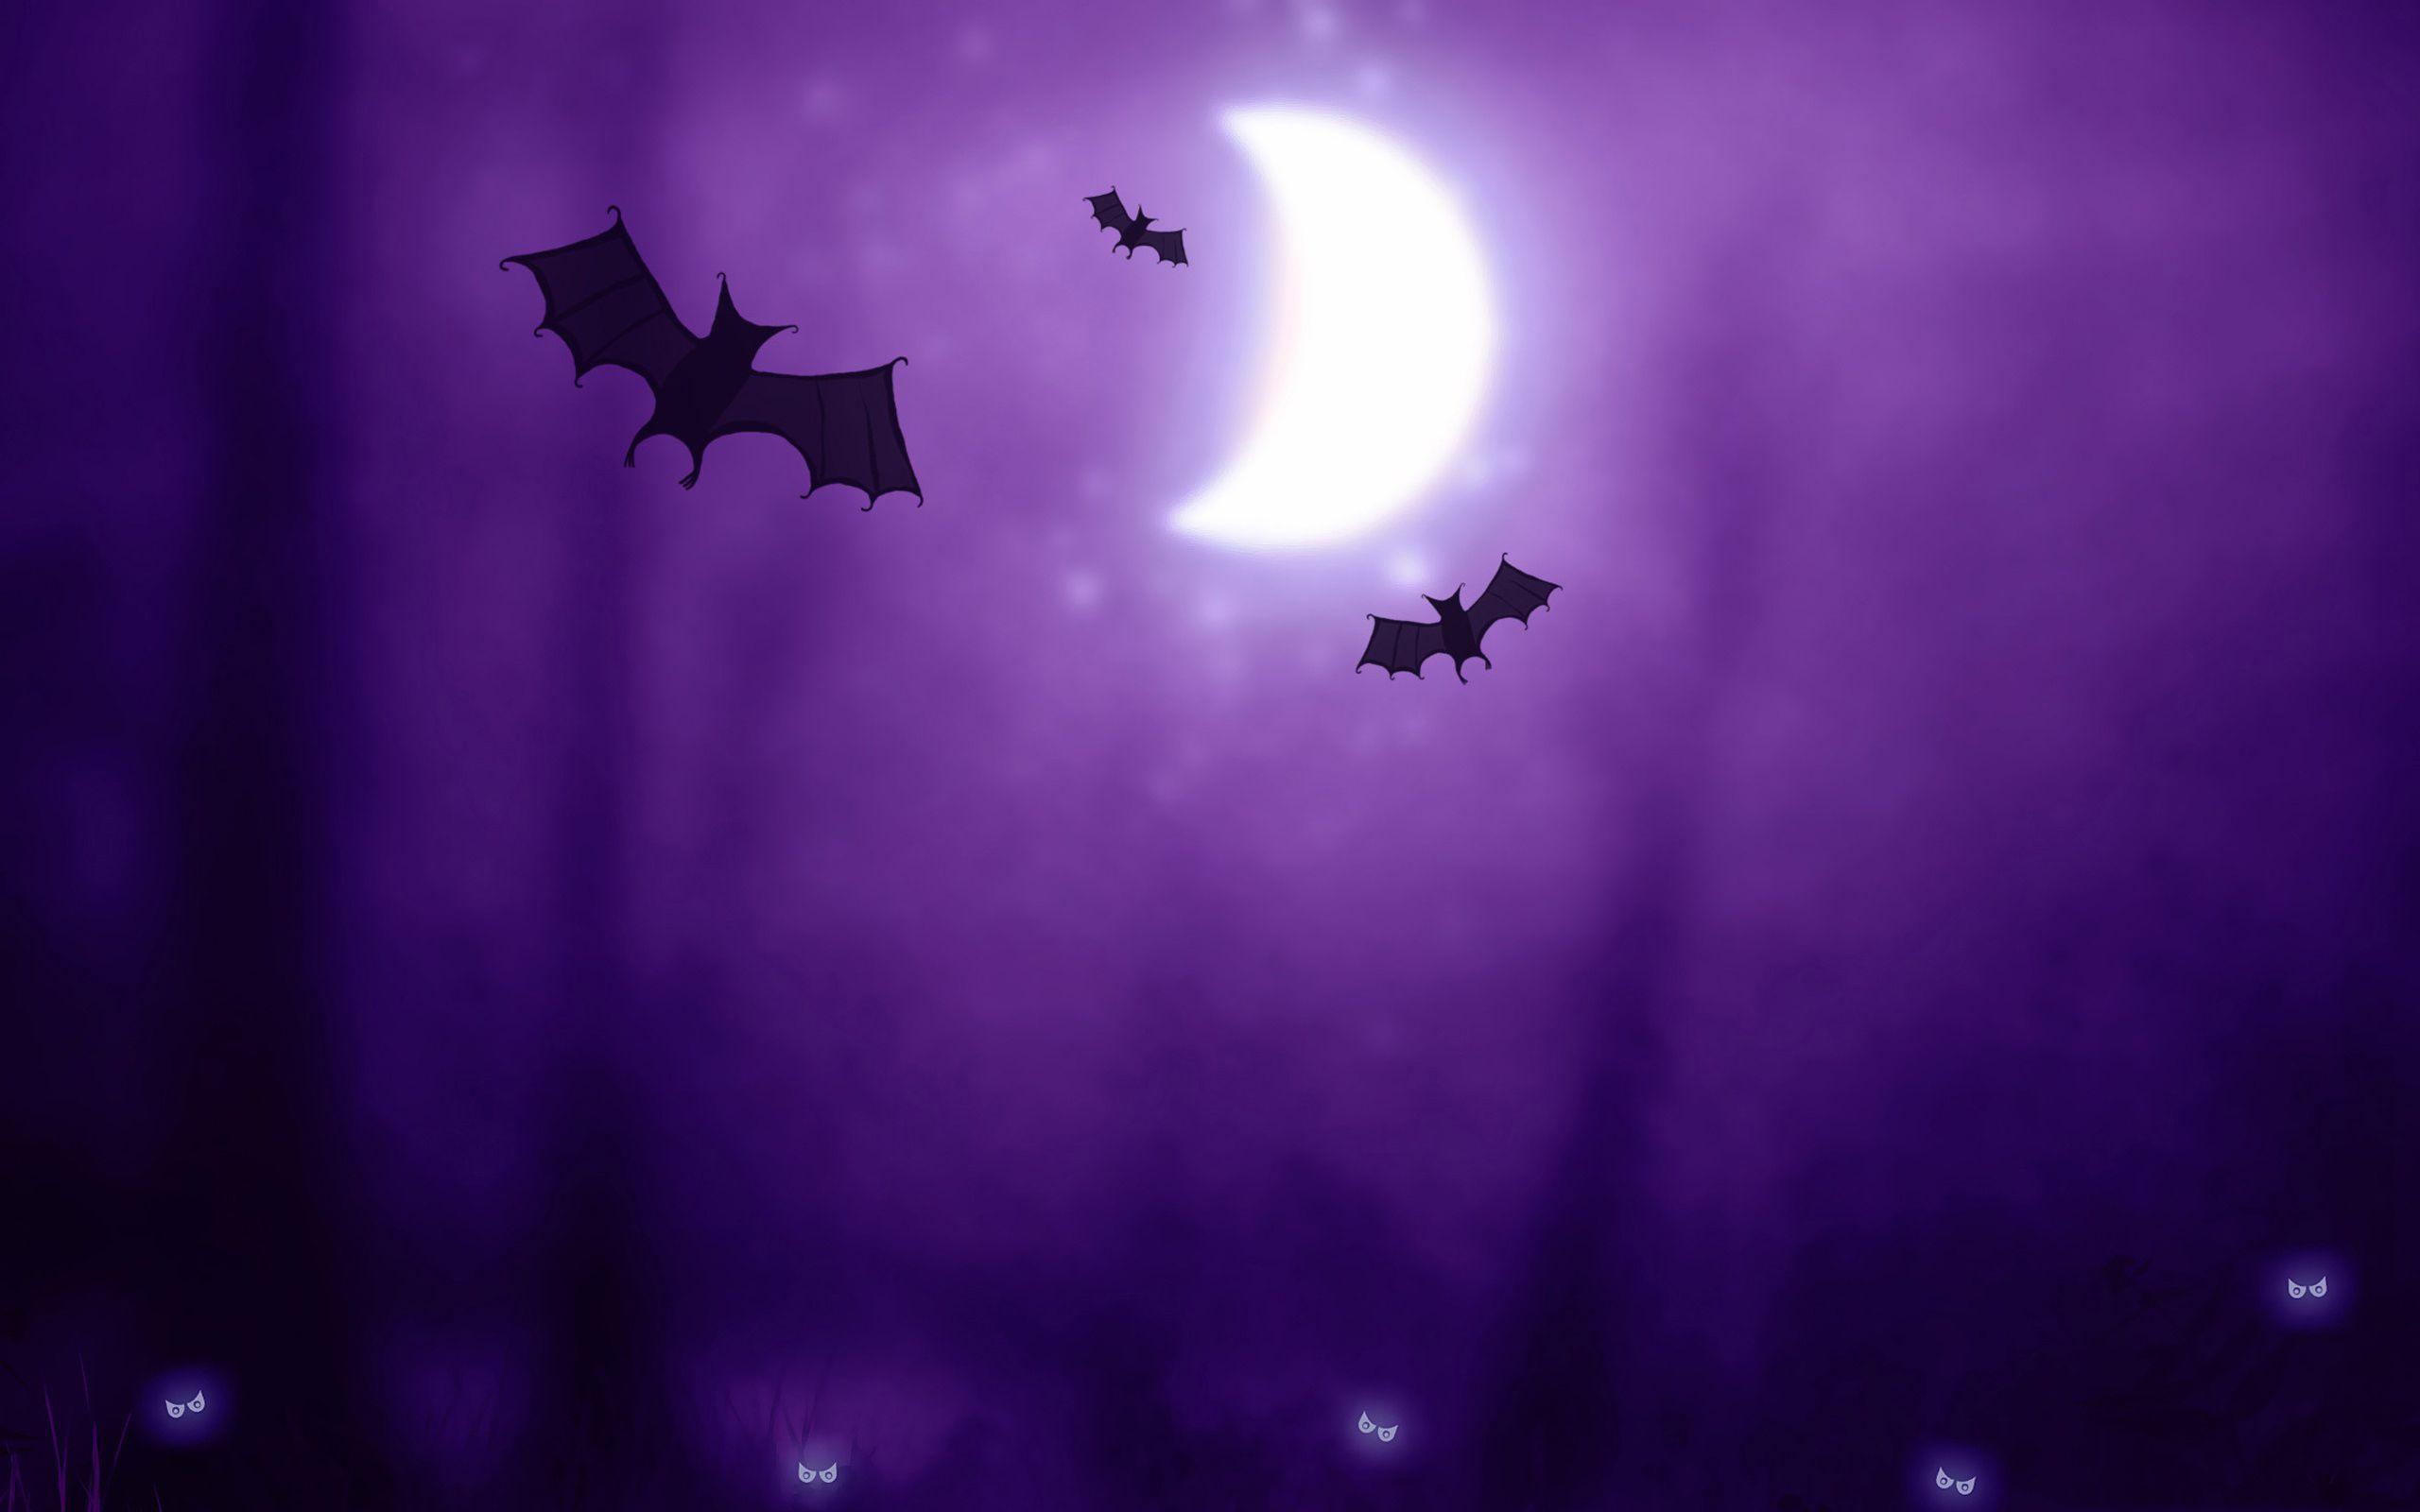 Halloween Bats Wallpaper